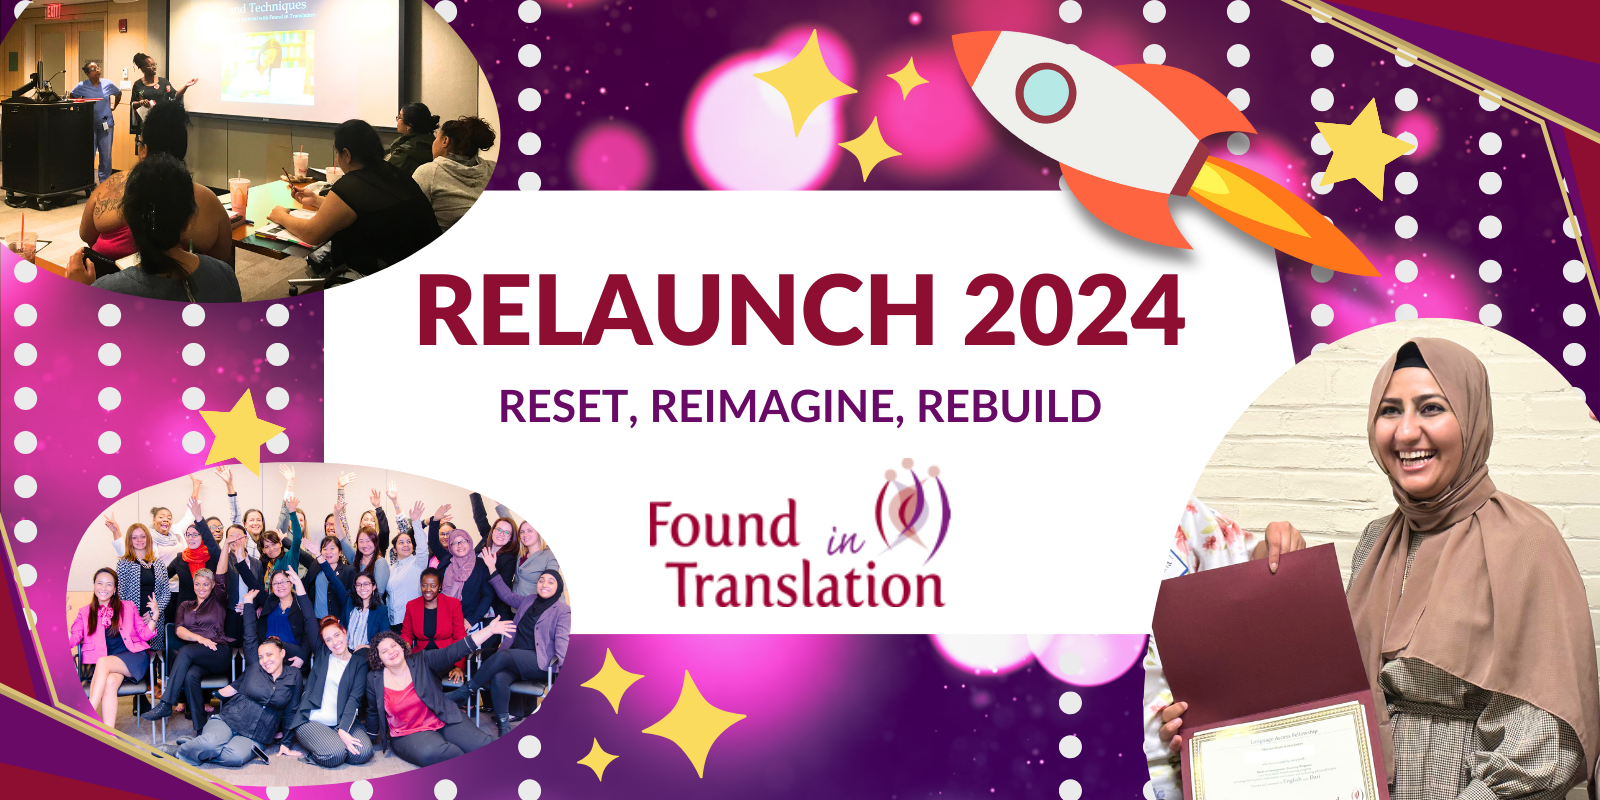 Relaunch 2024 Website (1600 x 800 px)